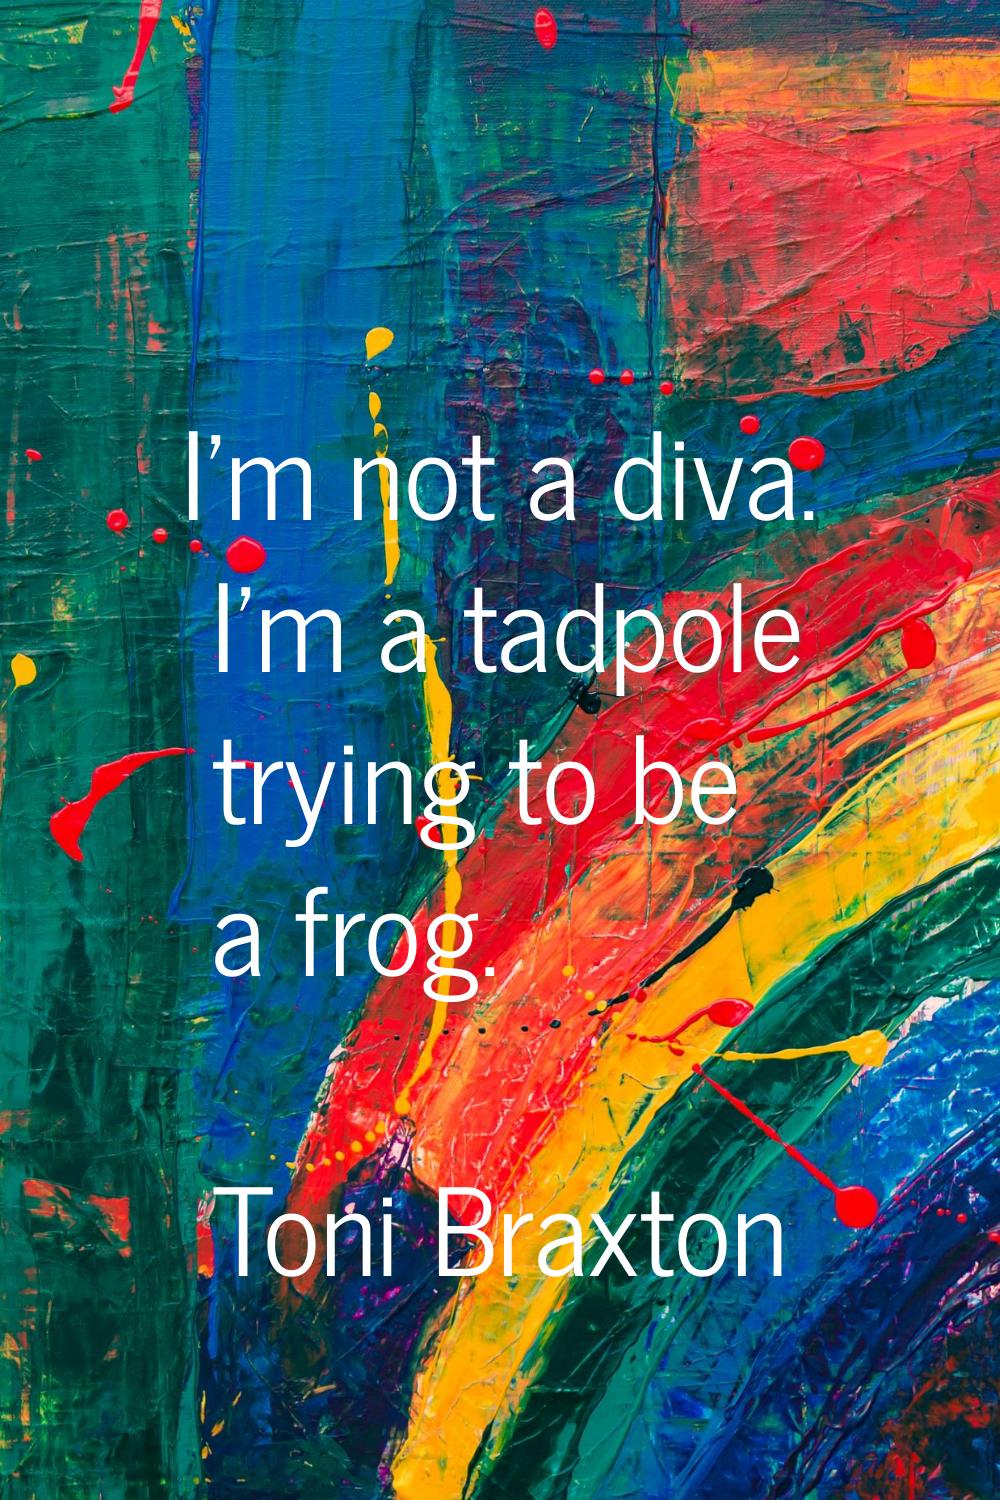 I'm not a diva. I'm a tadpole trying to be a frog.